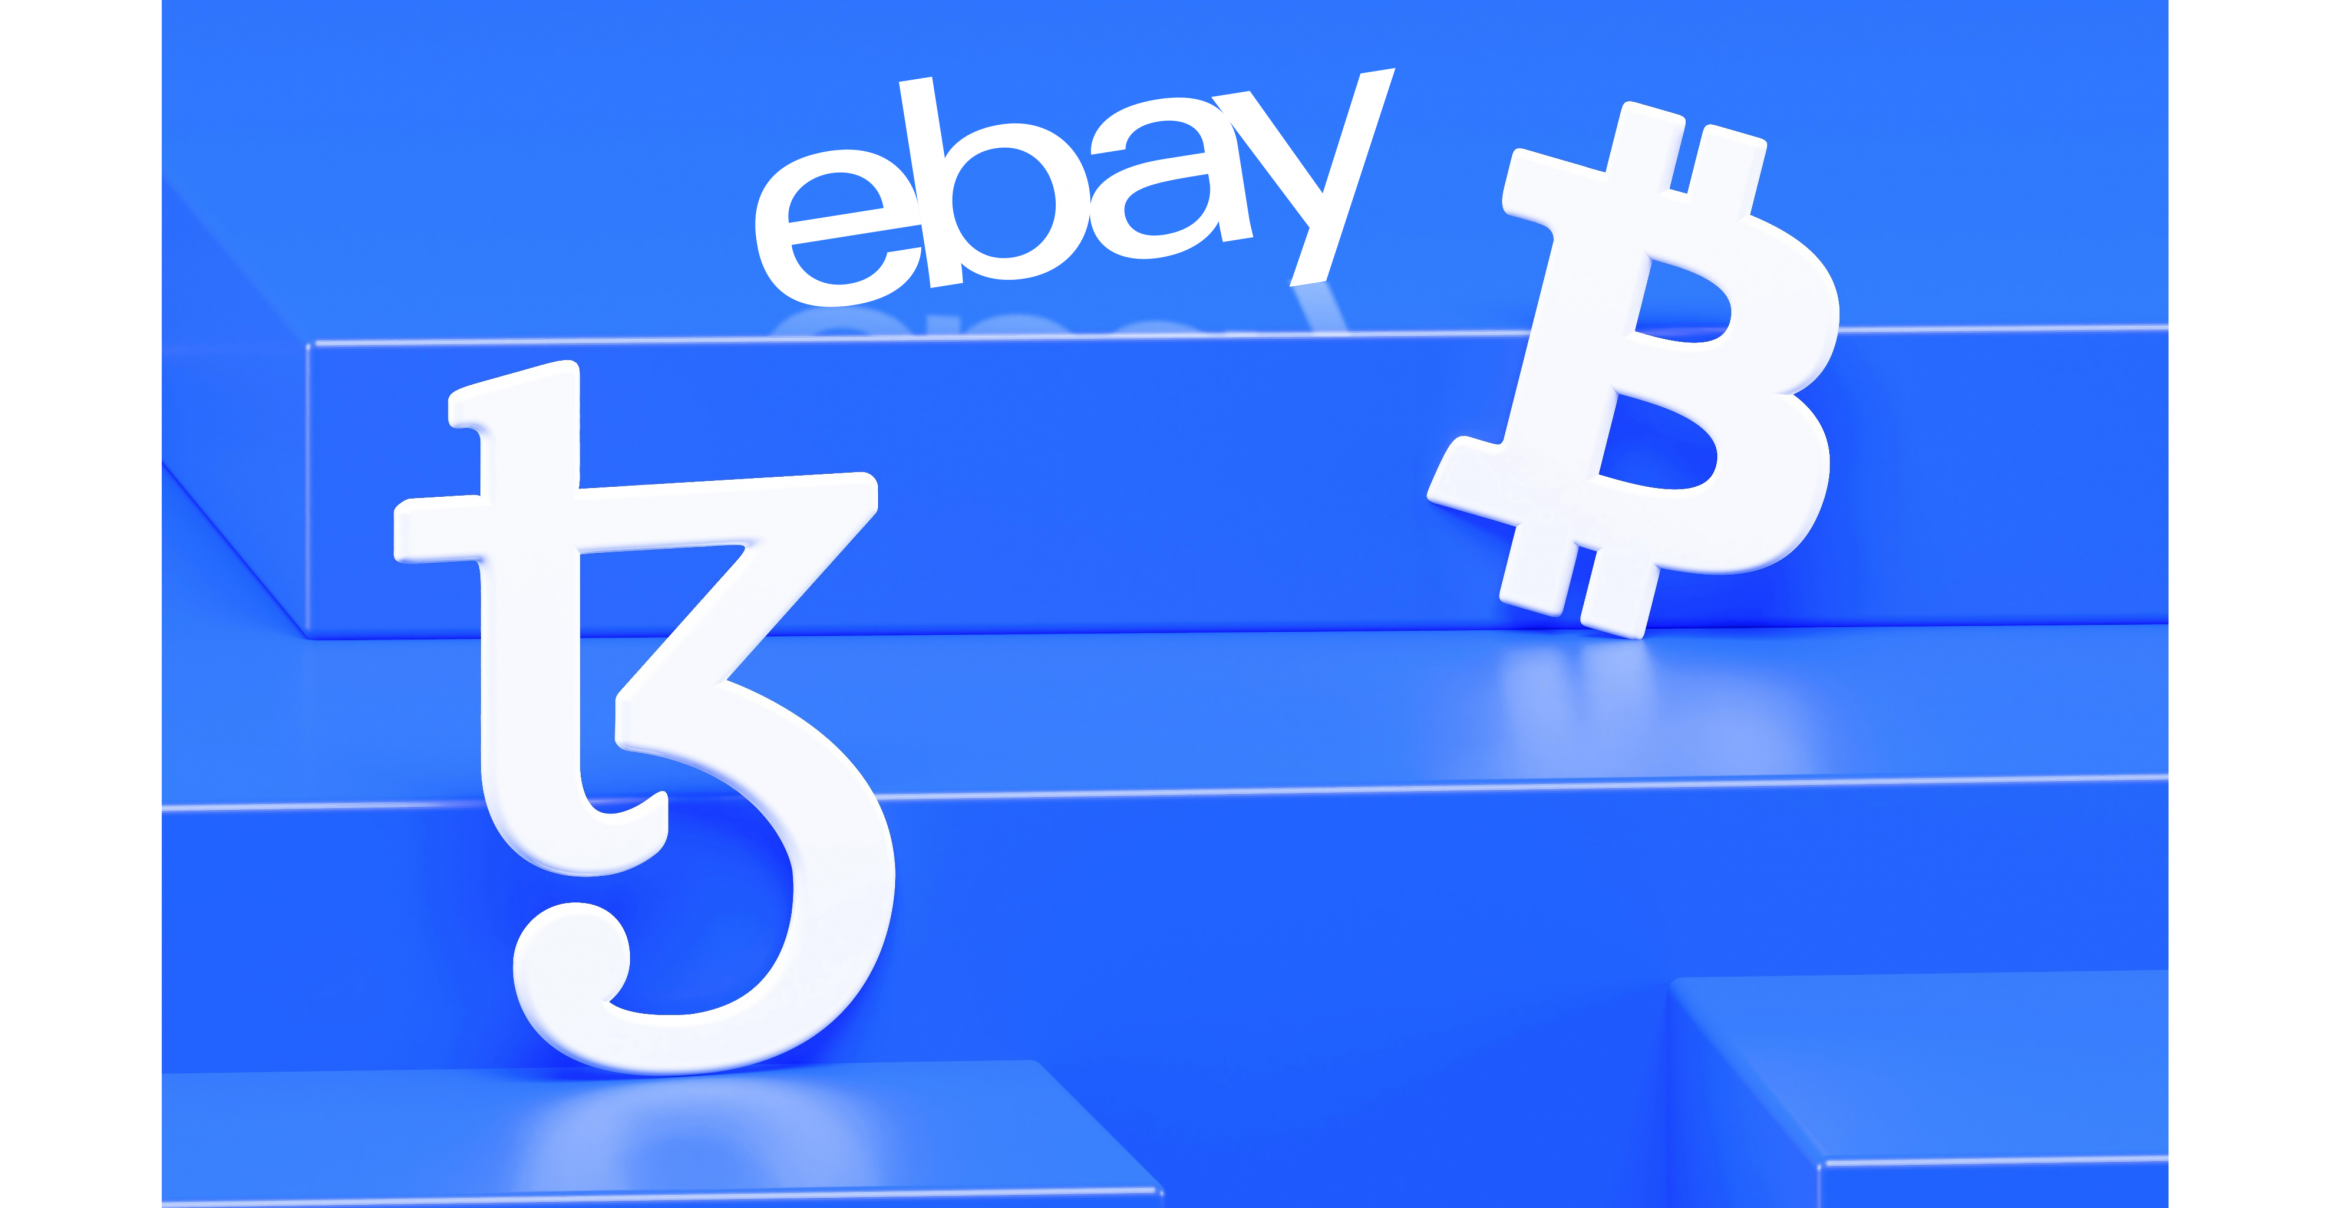 Integriert Ebay bald Kryptowährungen?